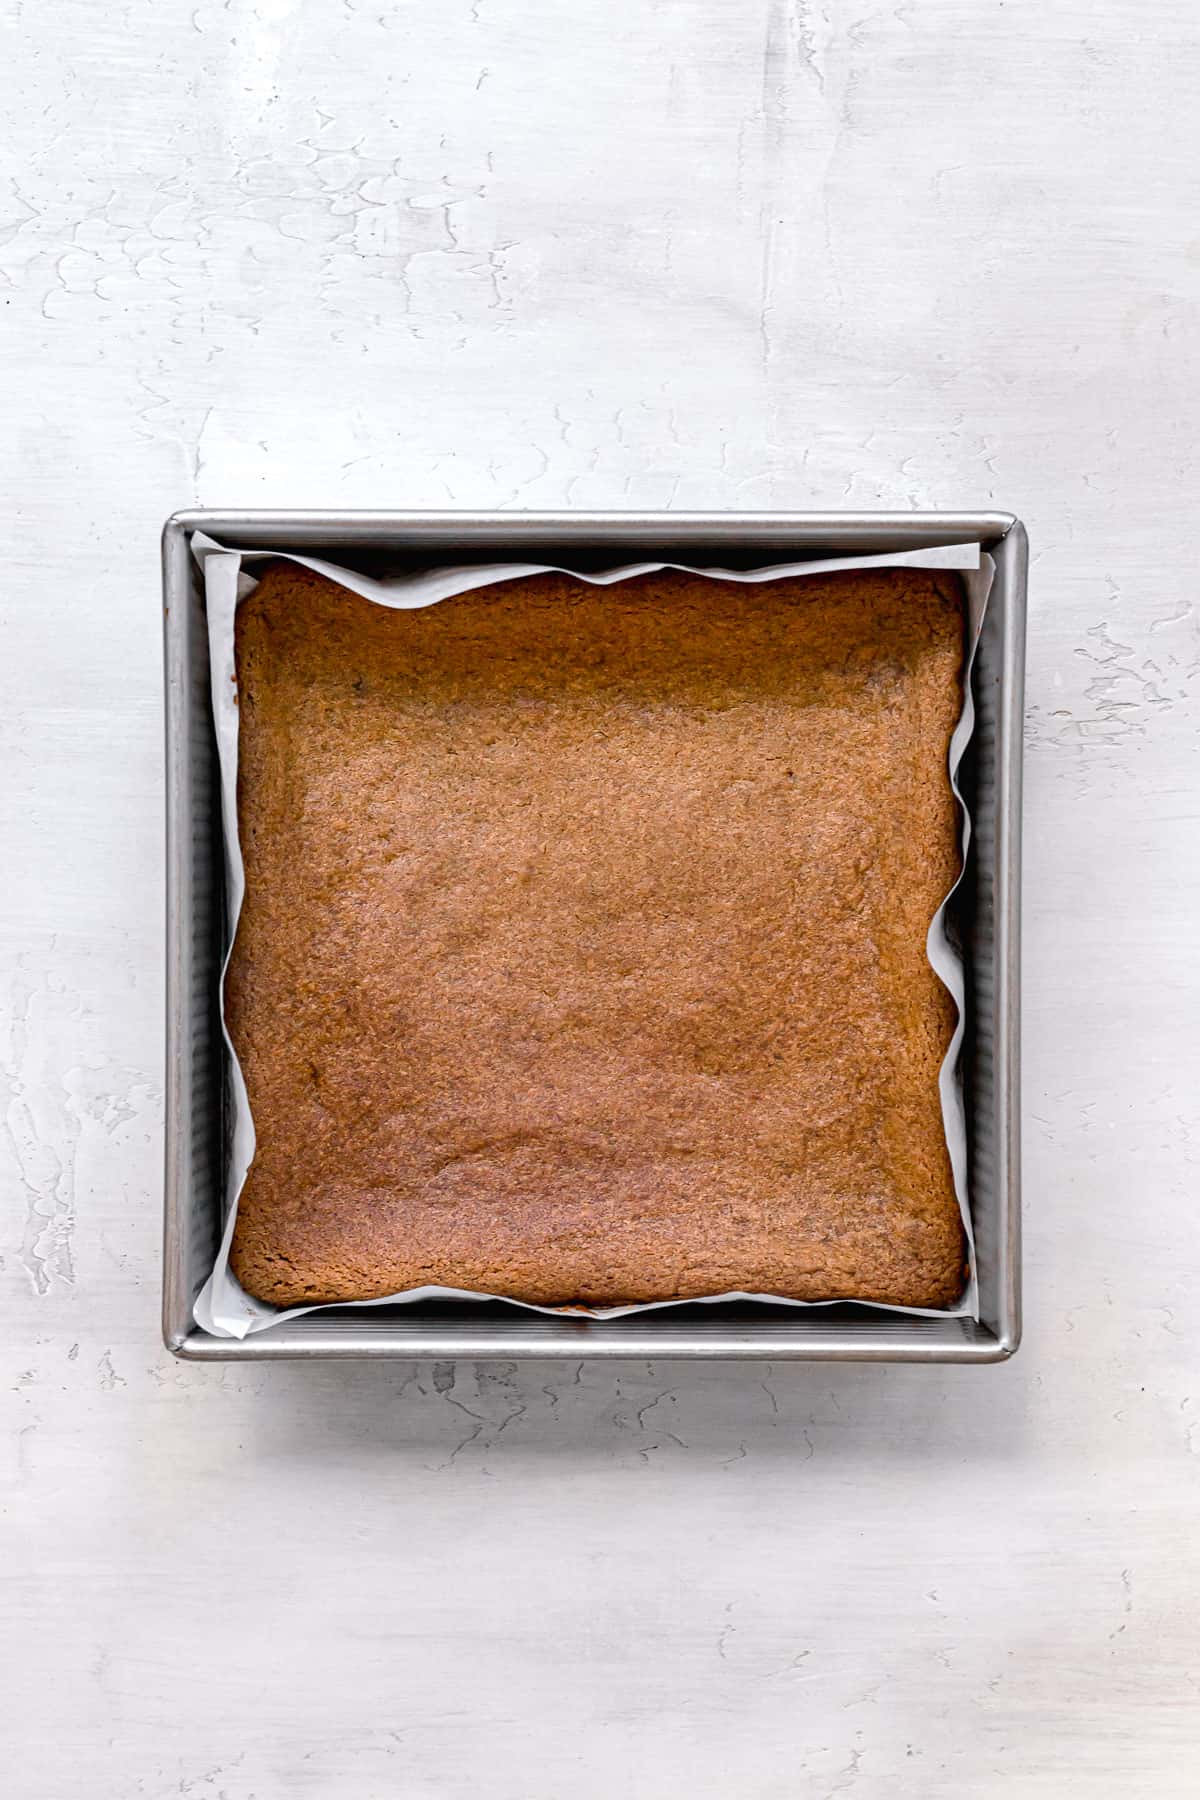 baked gingerbread blondies in metal pan.